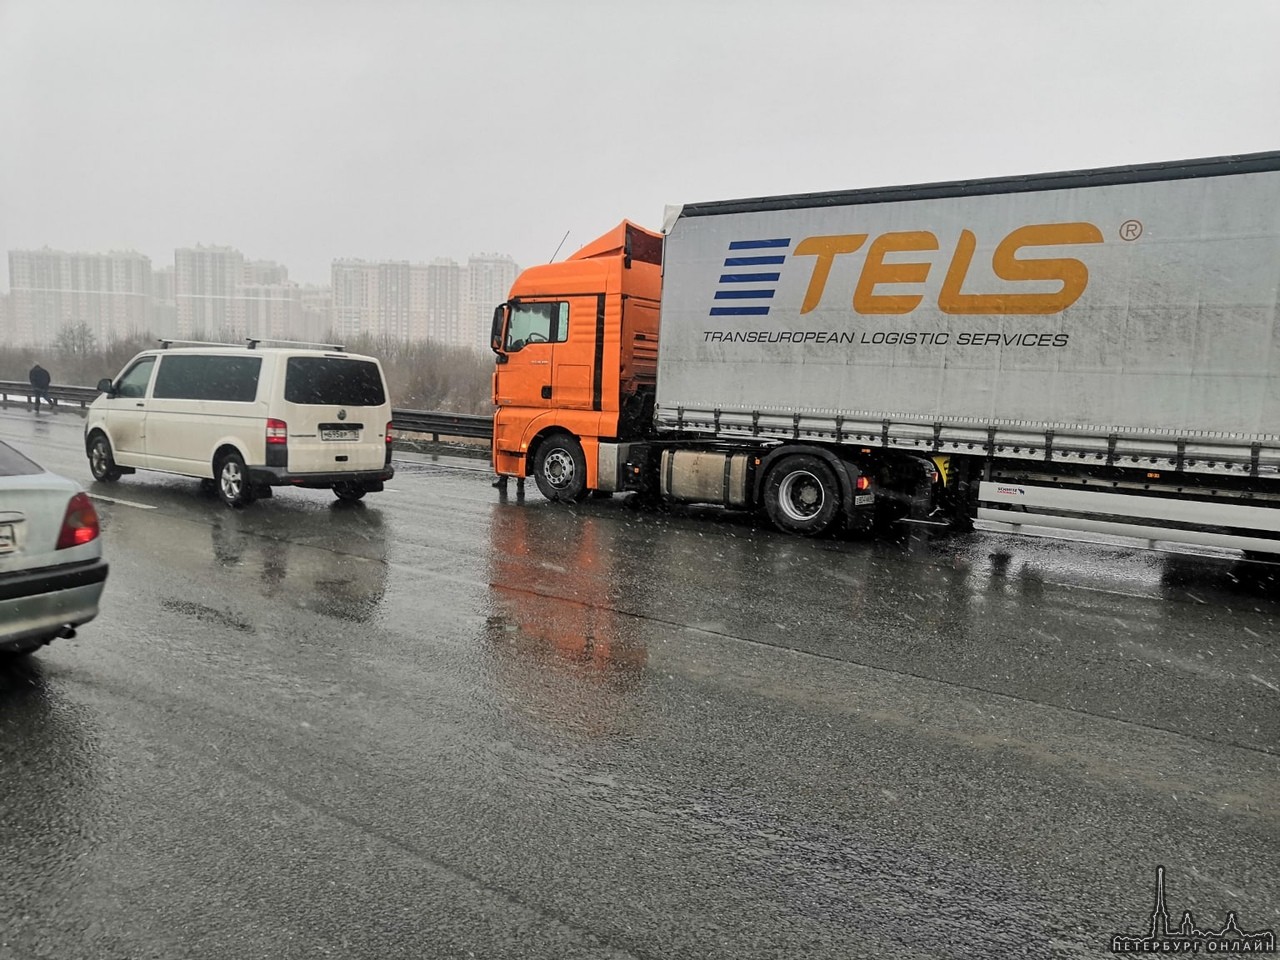 Сегодня примерно в 14:45 произошло ДТП на кольцевой автодороге, между Колтушским шоссе и Мурманским ...